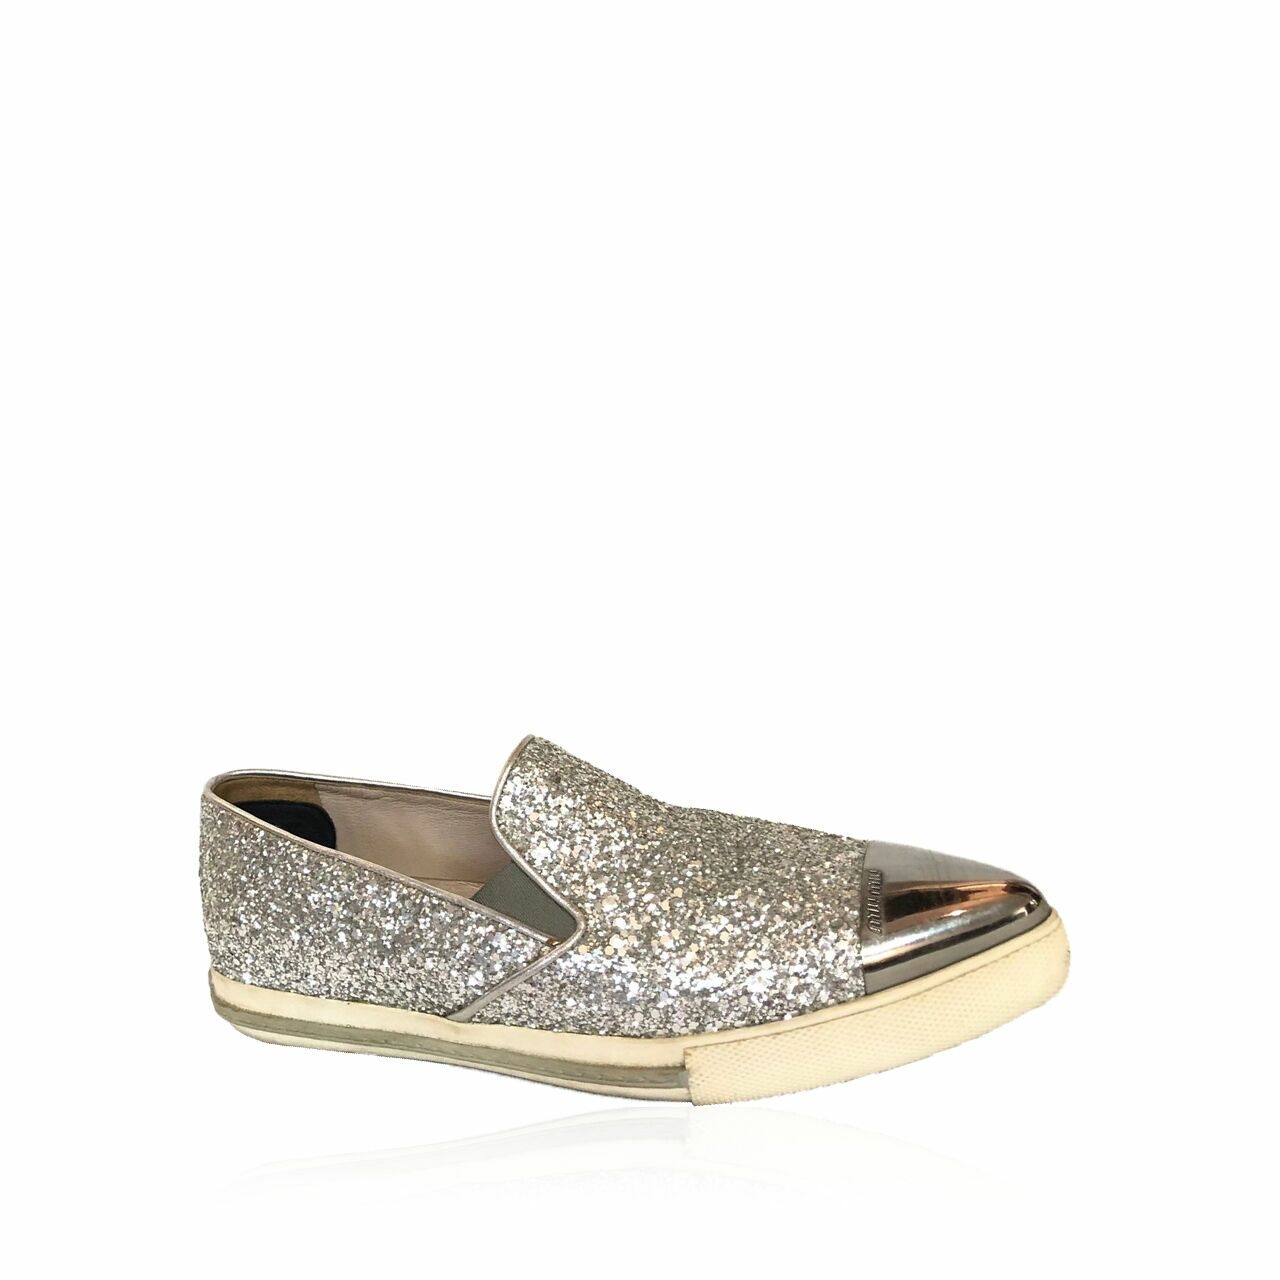 Miu Miu Calzature Donna Glitter Silver Shoes